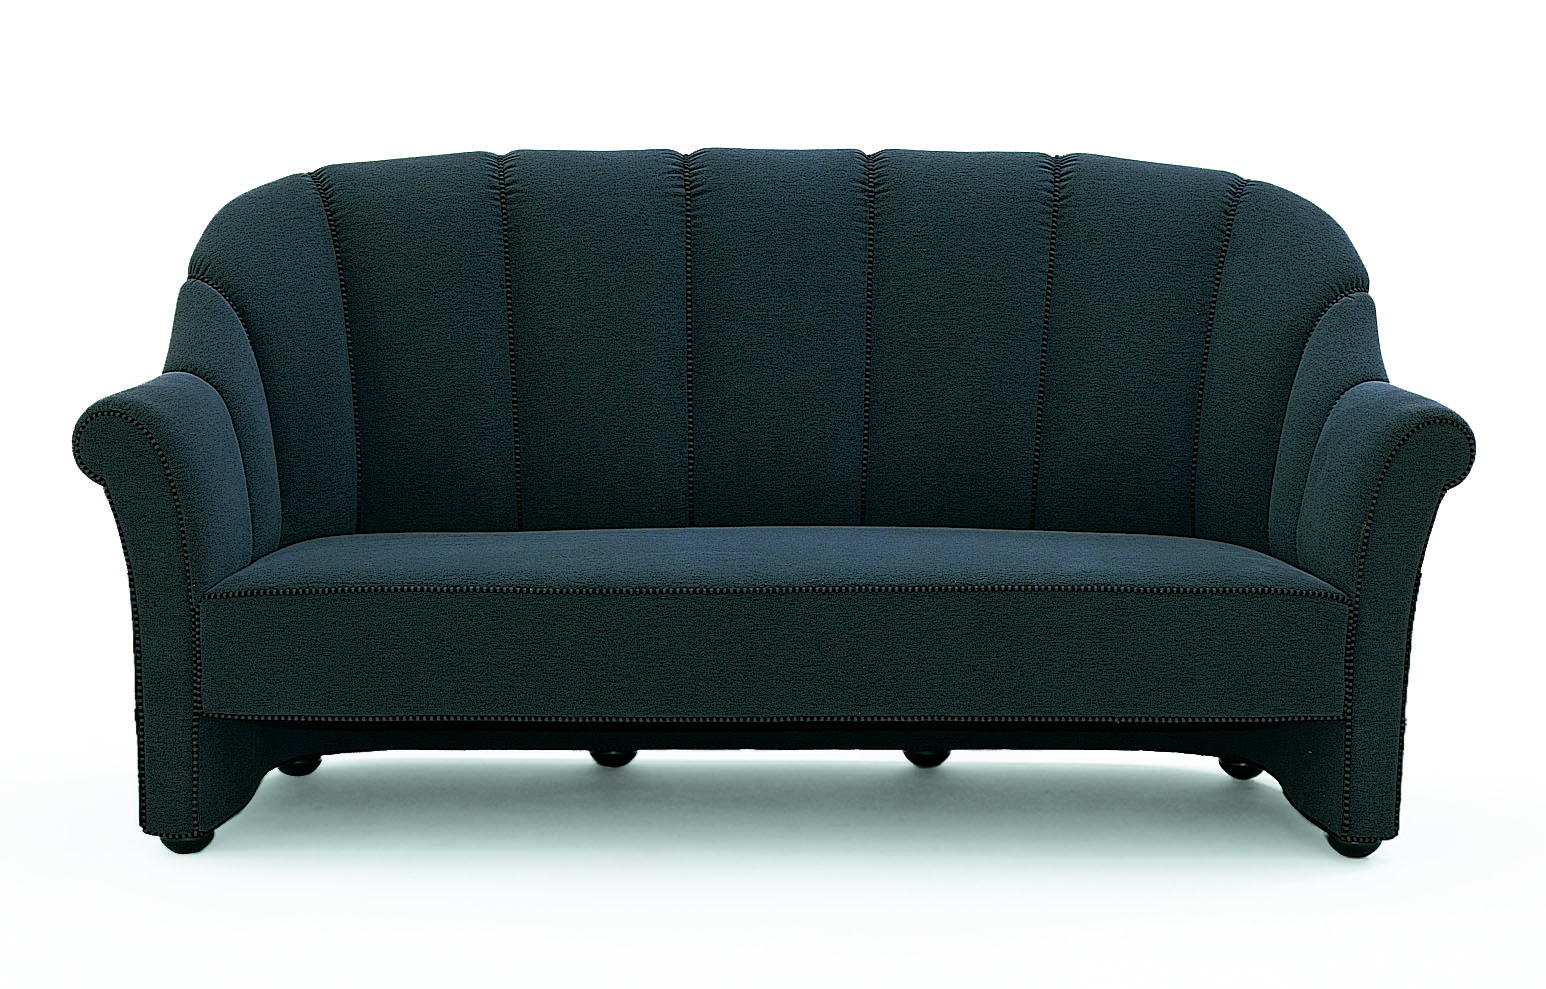 dunkel bezogenes dreisitziges klassisches Sofa